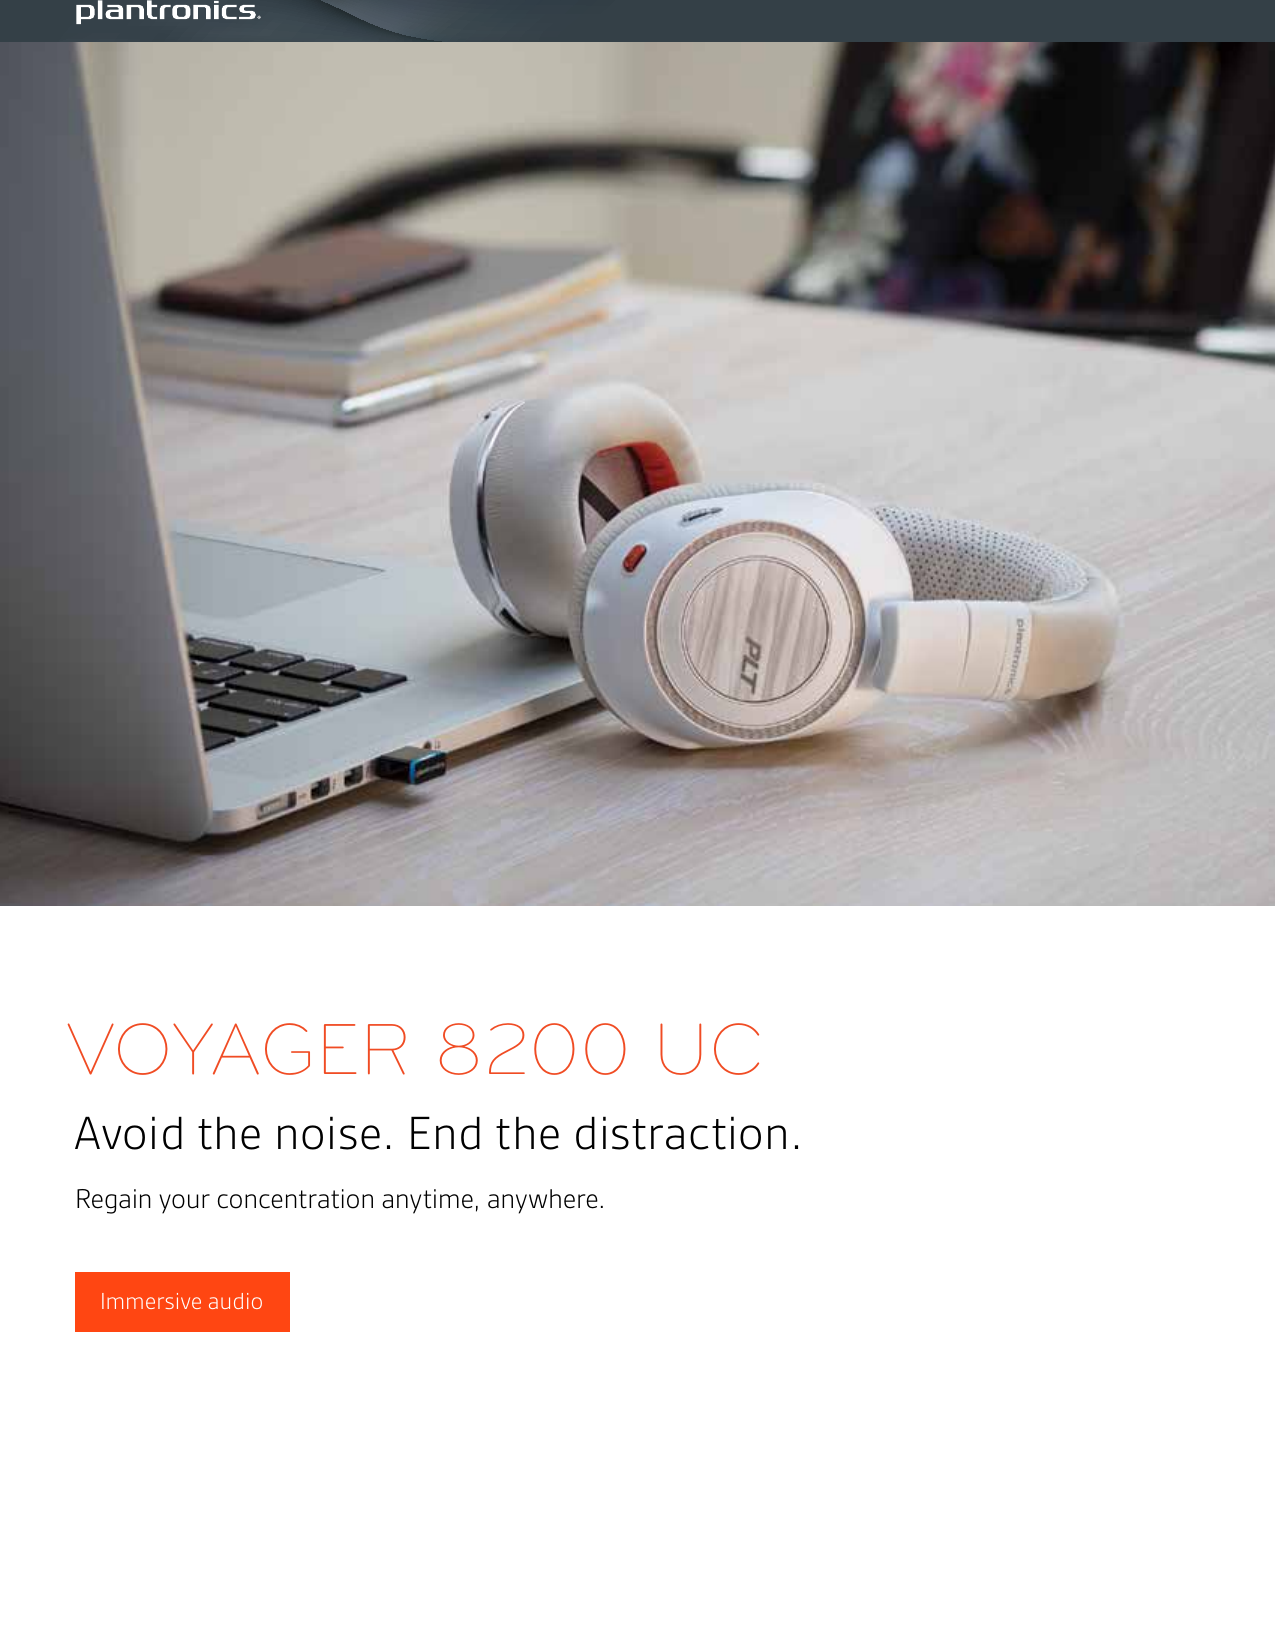 voyager 8200 user manual